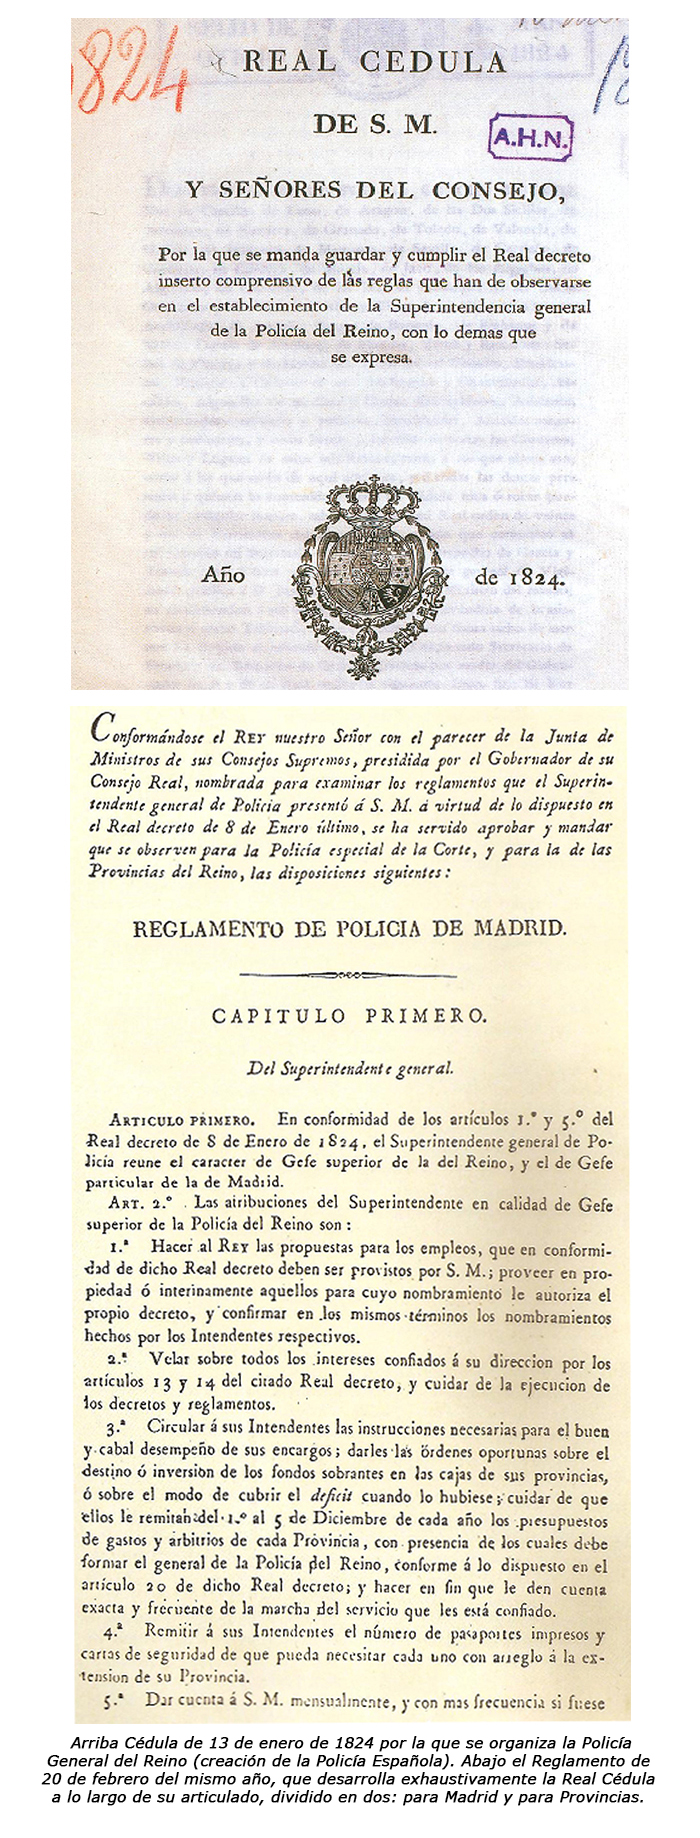 Real Cédula de 13 de enero de 1824 por la que se organiza la Policía General del Reino. Reglamento de 20 de febrero, que desarrolla la Real Cédula.